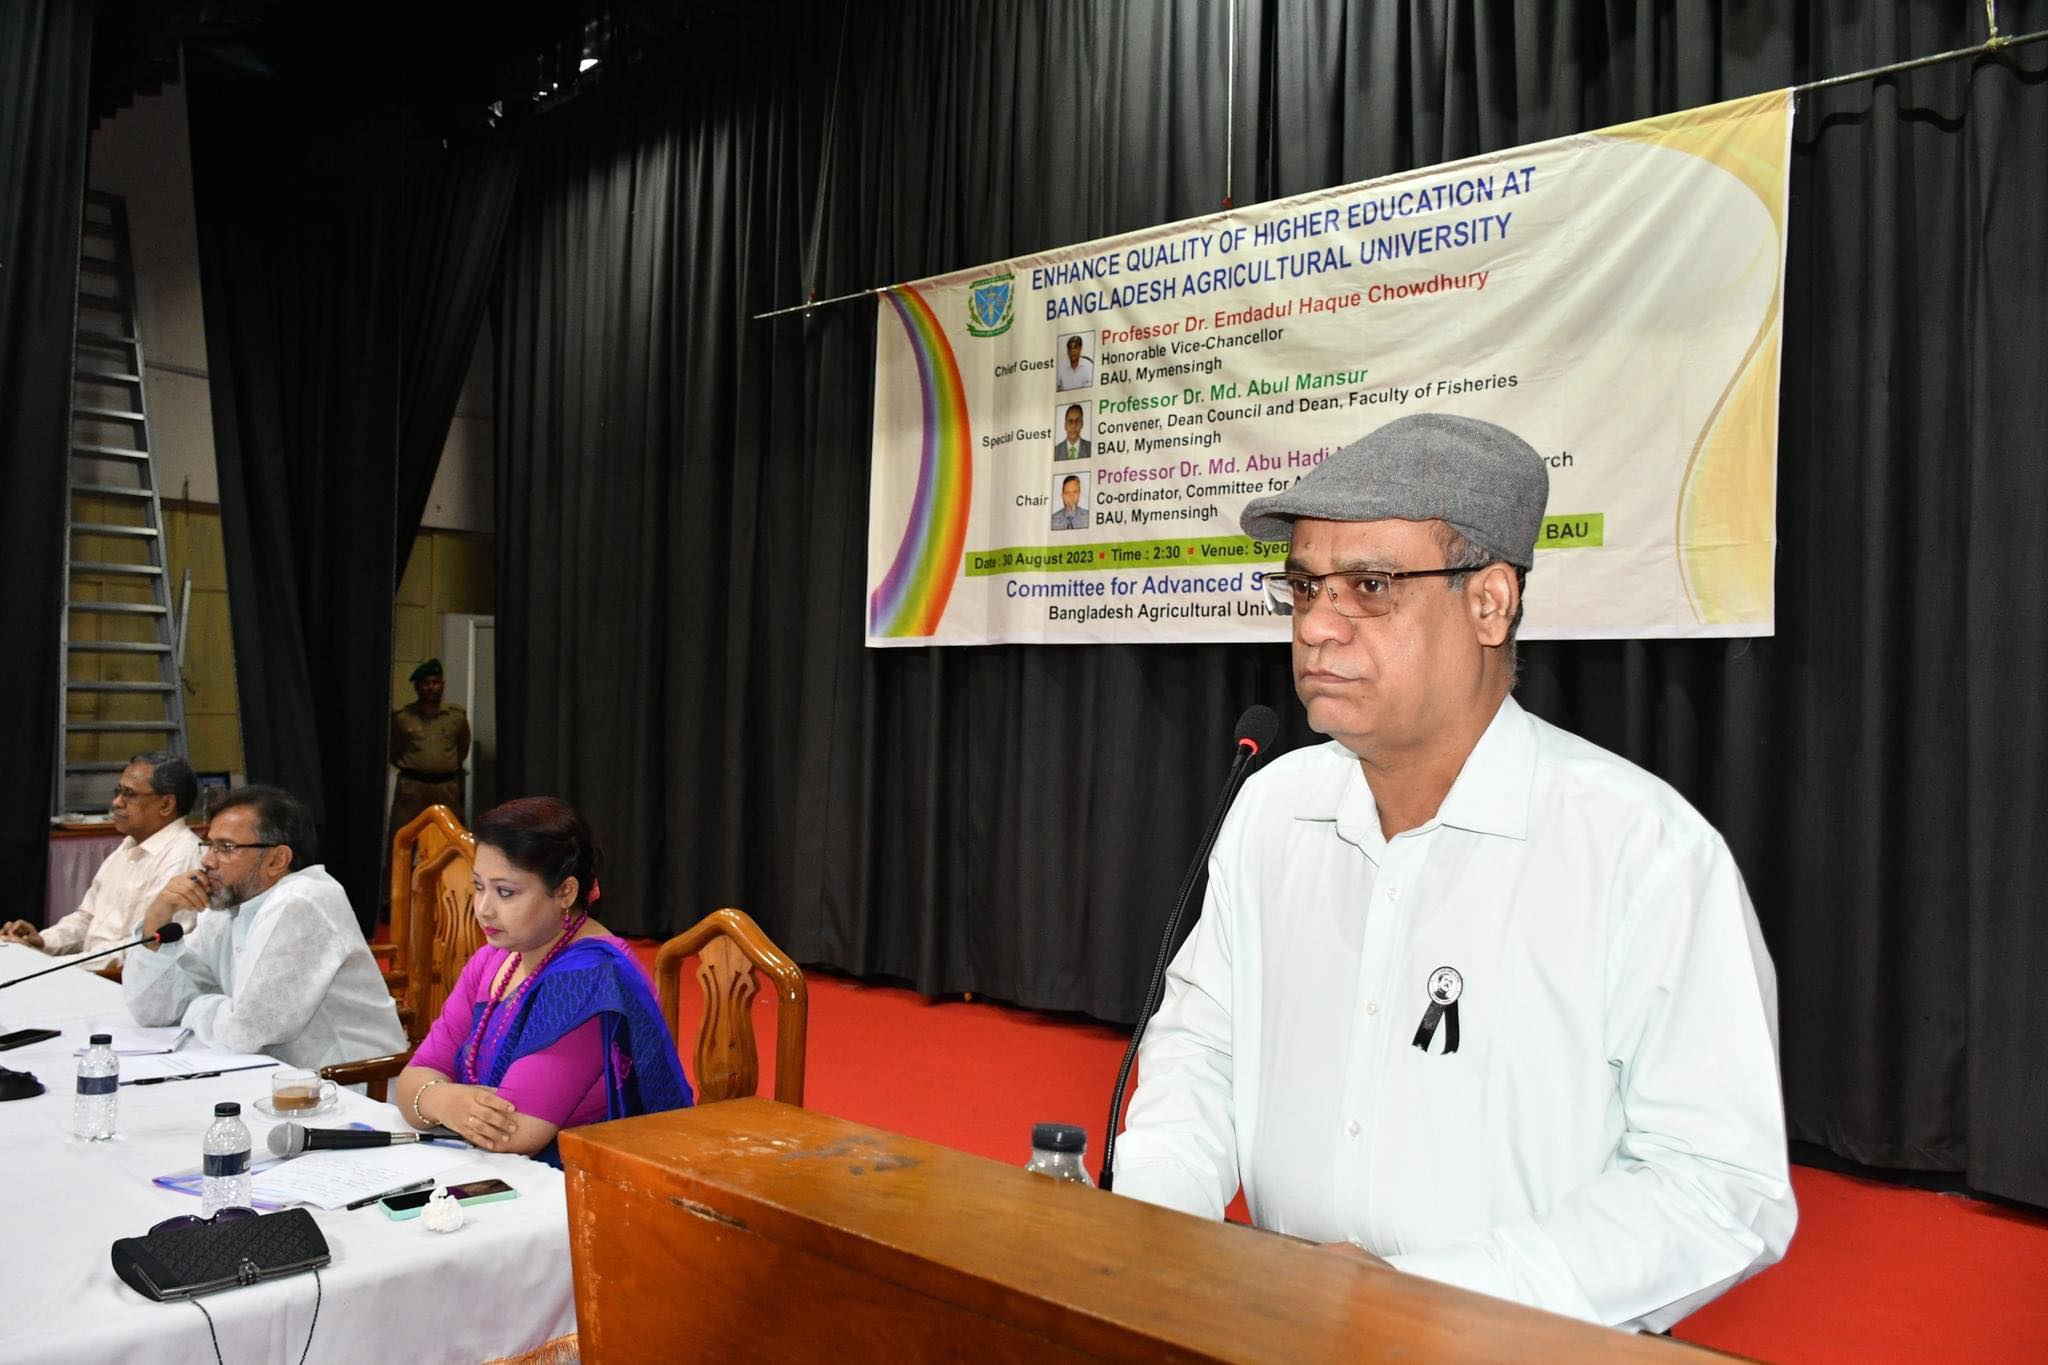 বাকৃবিতে “Enhance Quality of Higher Education at Bangladesh Agricultural University” শীর্ষক সেমিনার অনুষ্ঠিত